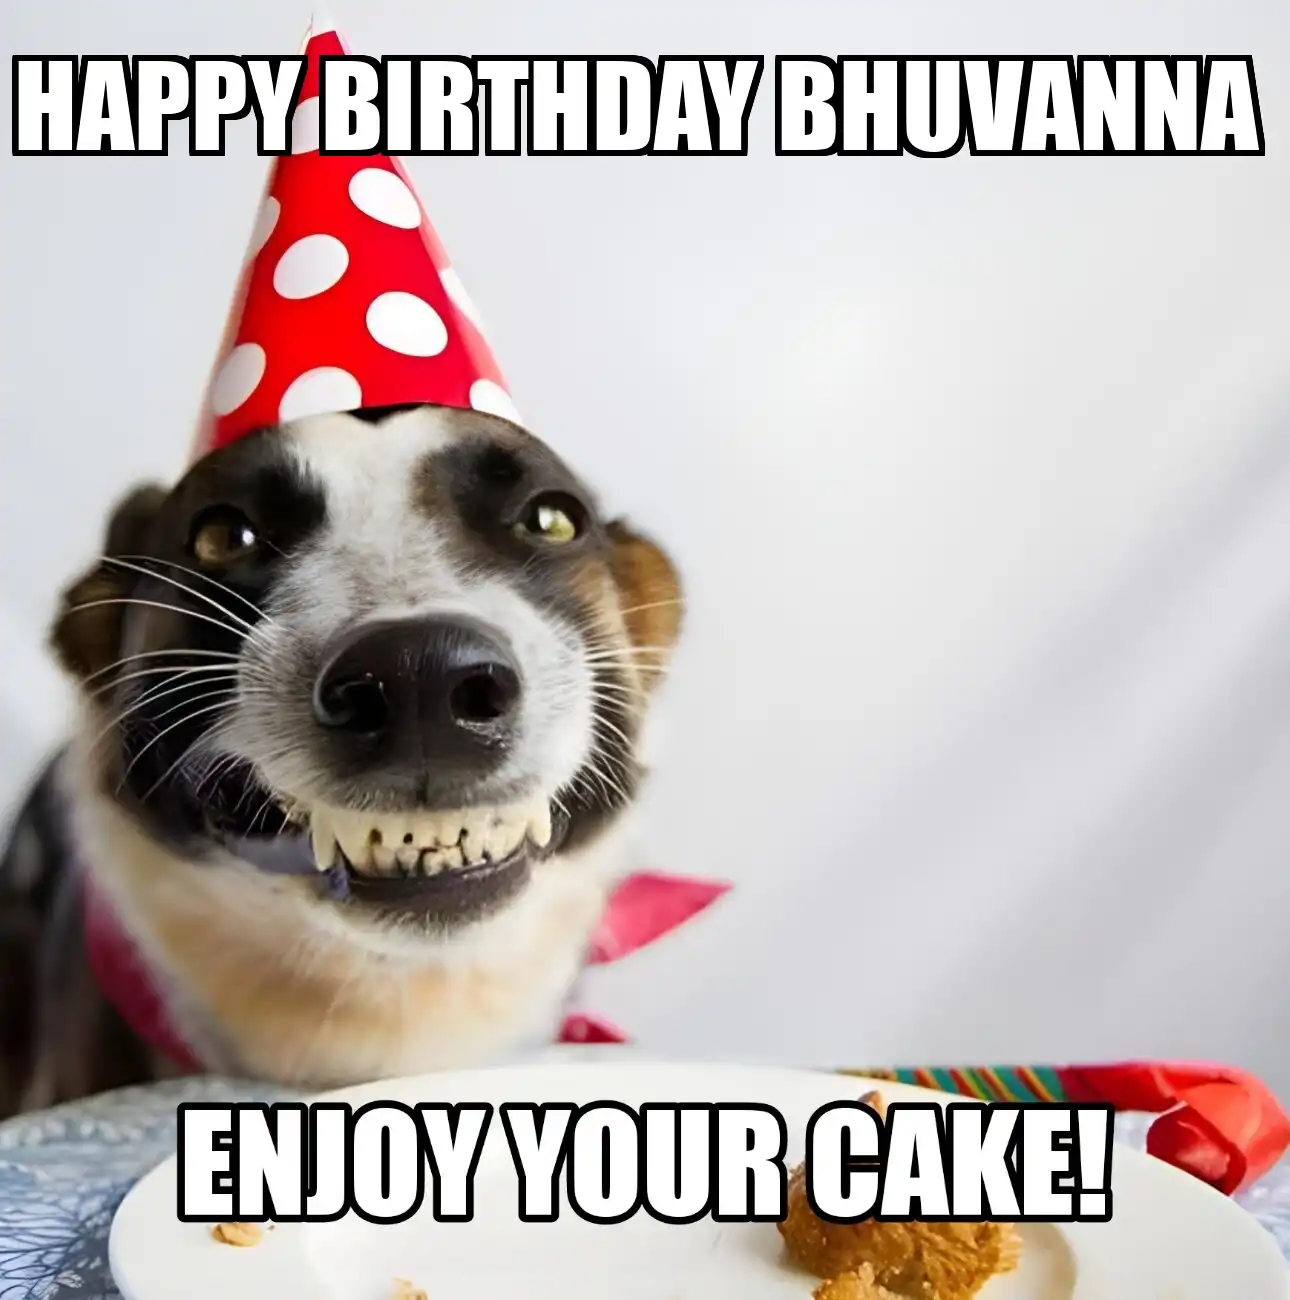 Happy Birthday Bhuvanna Enjoy Your Cake Dog Meme